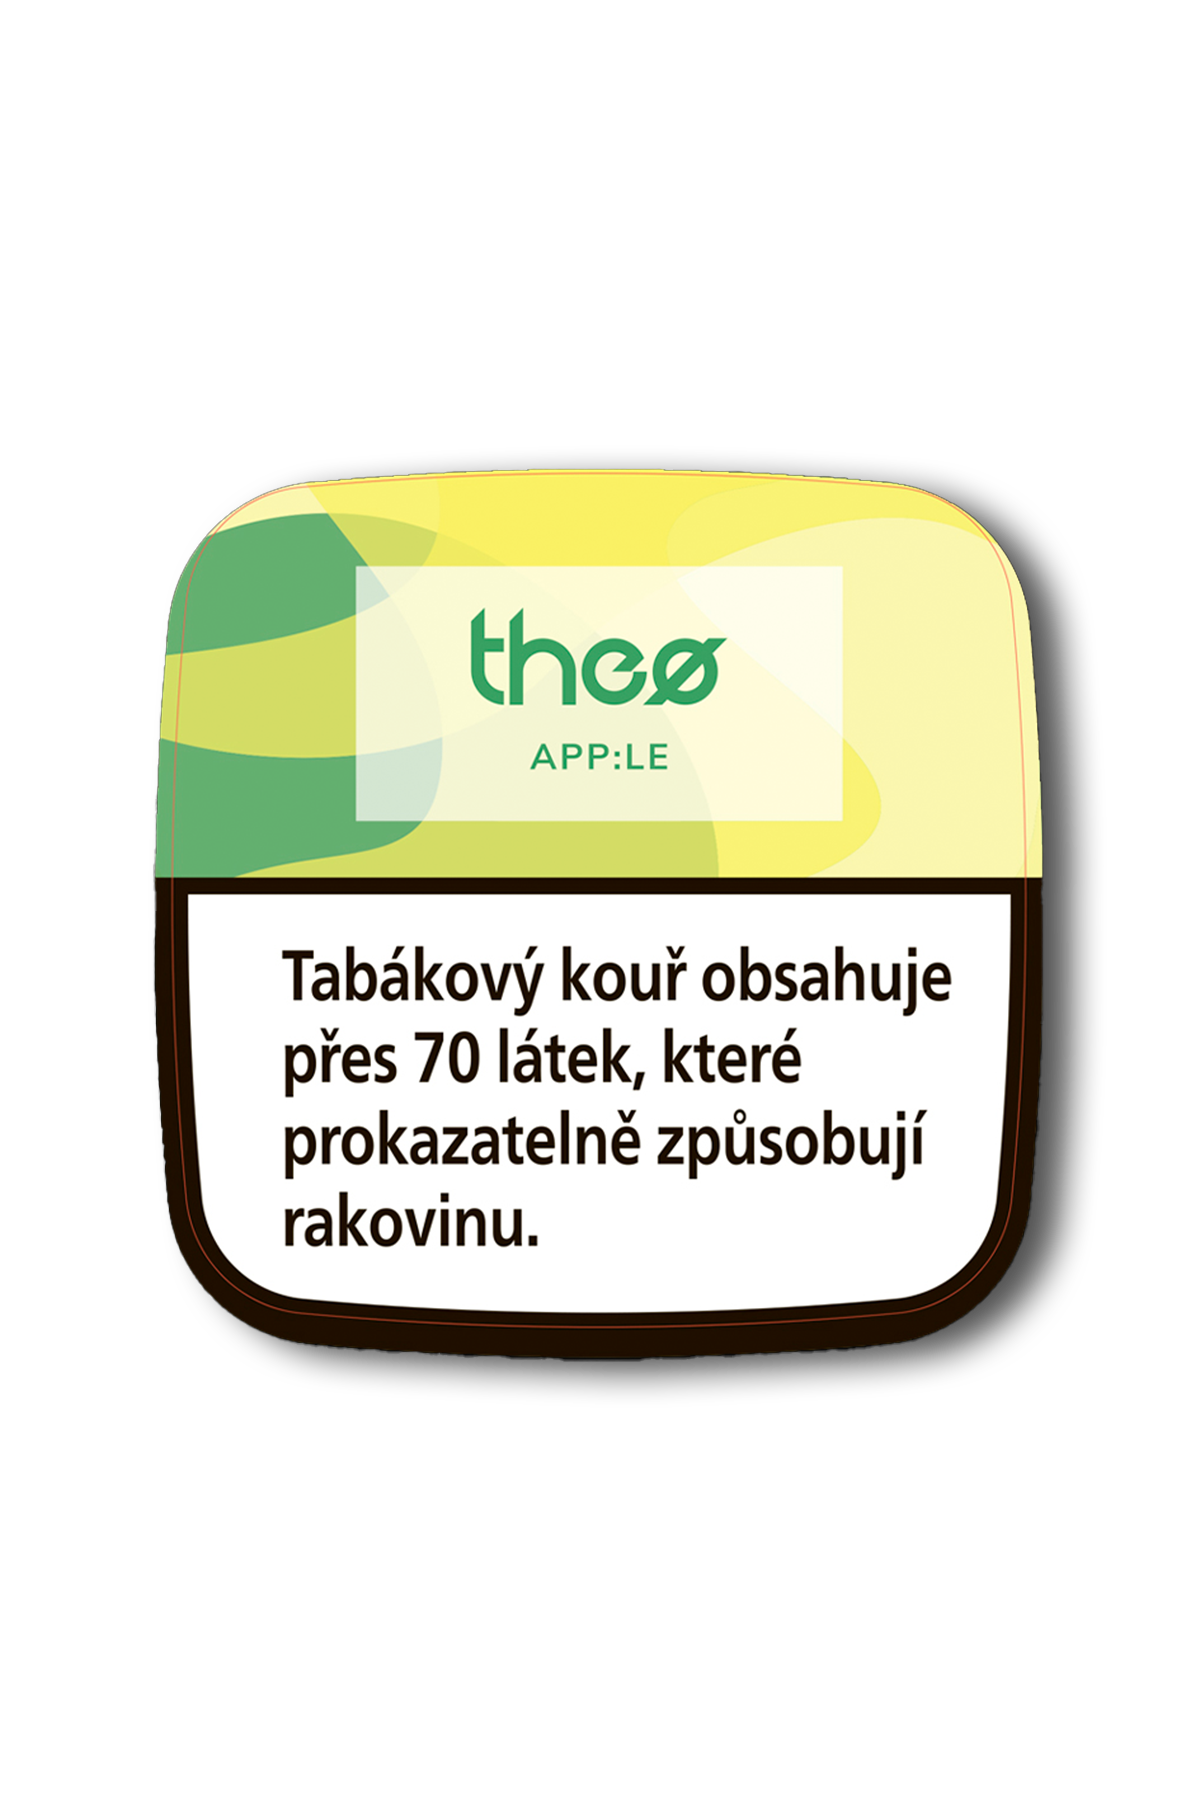 Tabák - Theo 200g - App:le